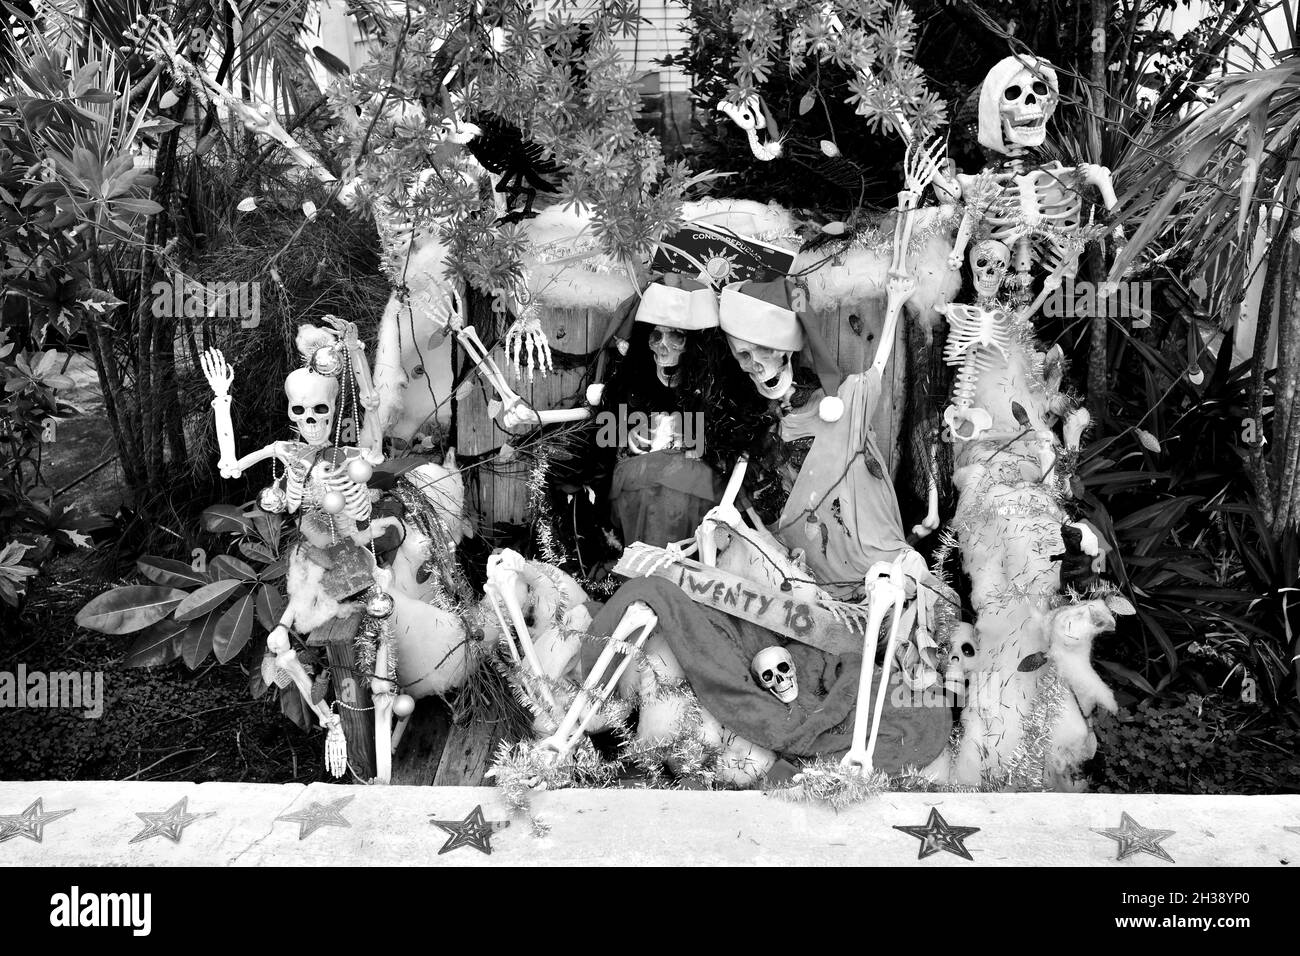 Exposition de Noël des squelettes célébrant à Key West, FL, États-Unis.Très graphique, couleurs saturées, photographie horizontale. Banque D'Images